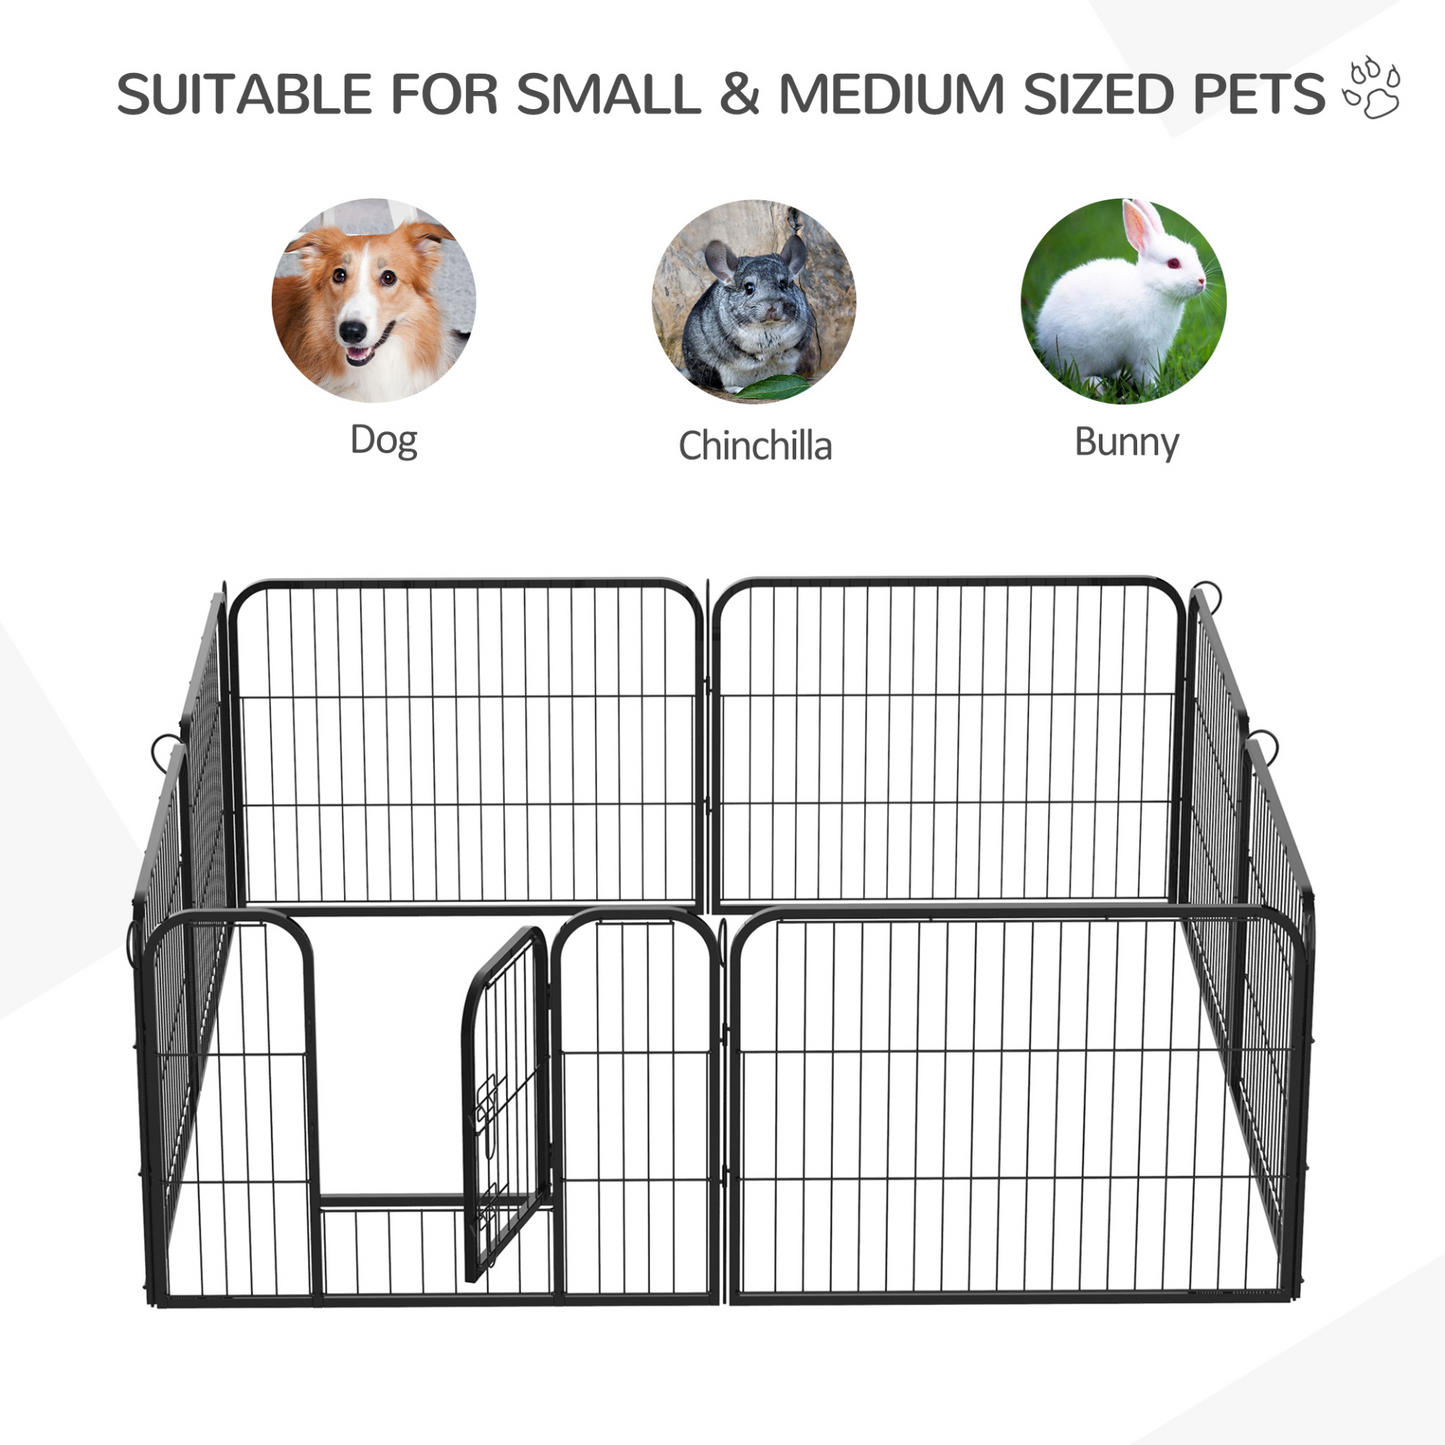 Pawhut Heavy Duty Dog pen 8 Panel Pet Puppy PlayPen Rabbit Hutch Run indoor outdoor Black, 80 x 60 cm